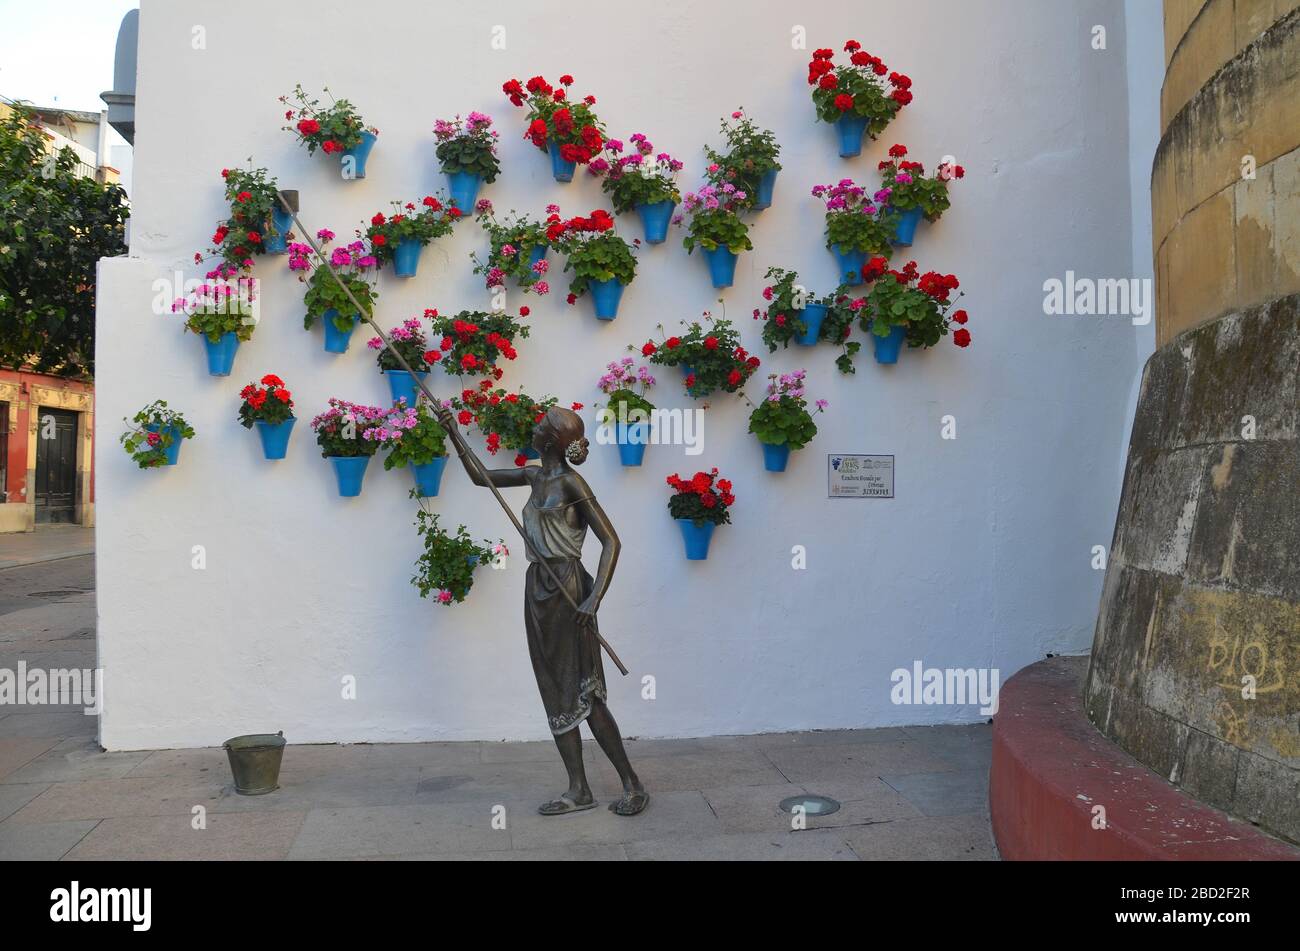 Cordoba in Andalusien, Spanien: Blumenschmuck in der Altstadt Stock Photo